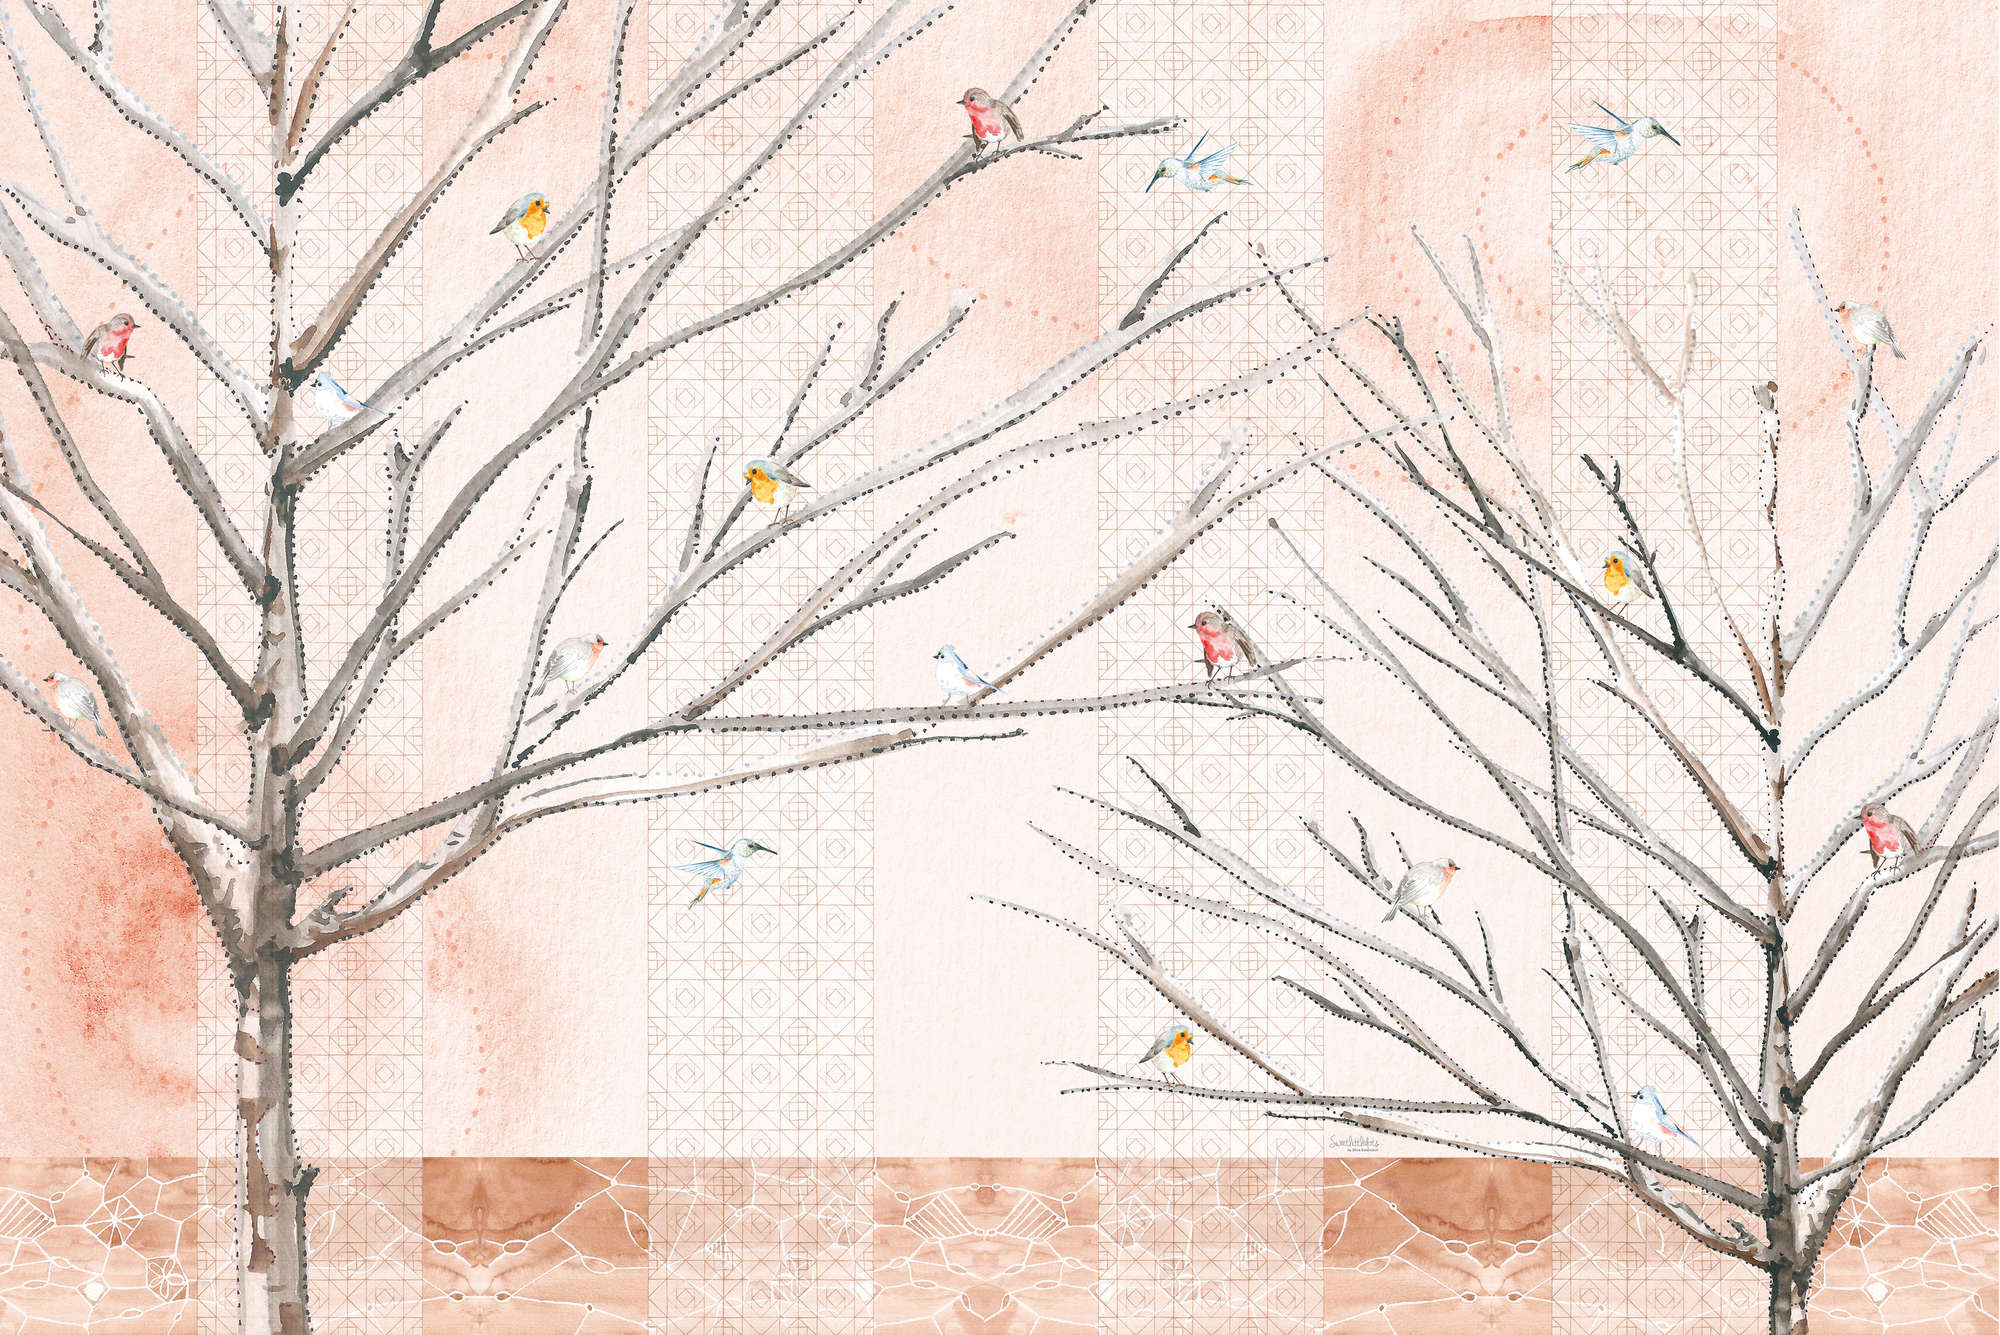             Papel pintado artístico Árboles con pájaros en beige y marrón sobre tejido no tejido liso mate
        